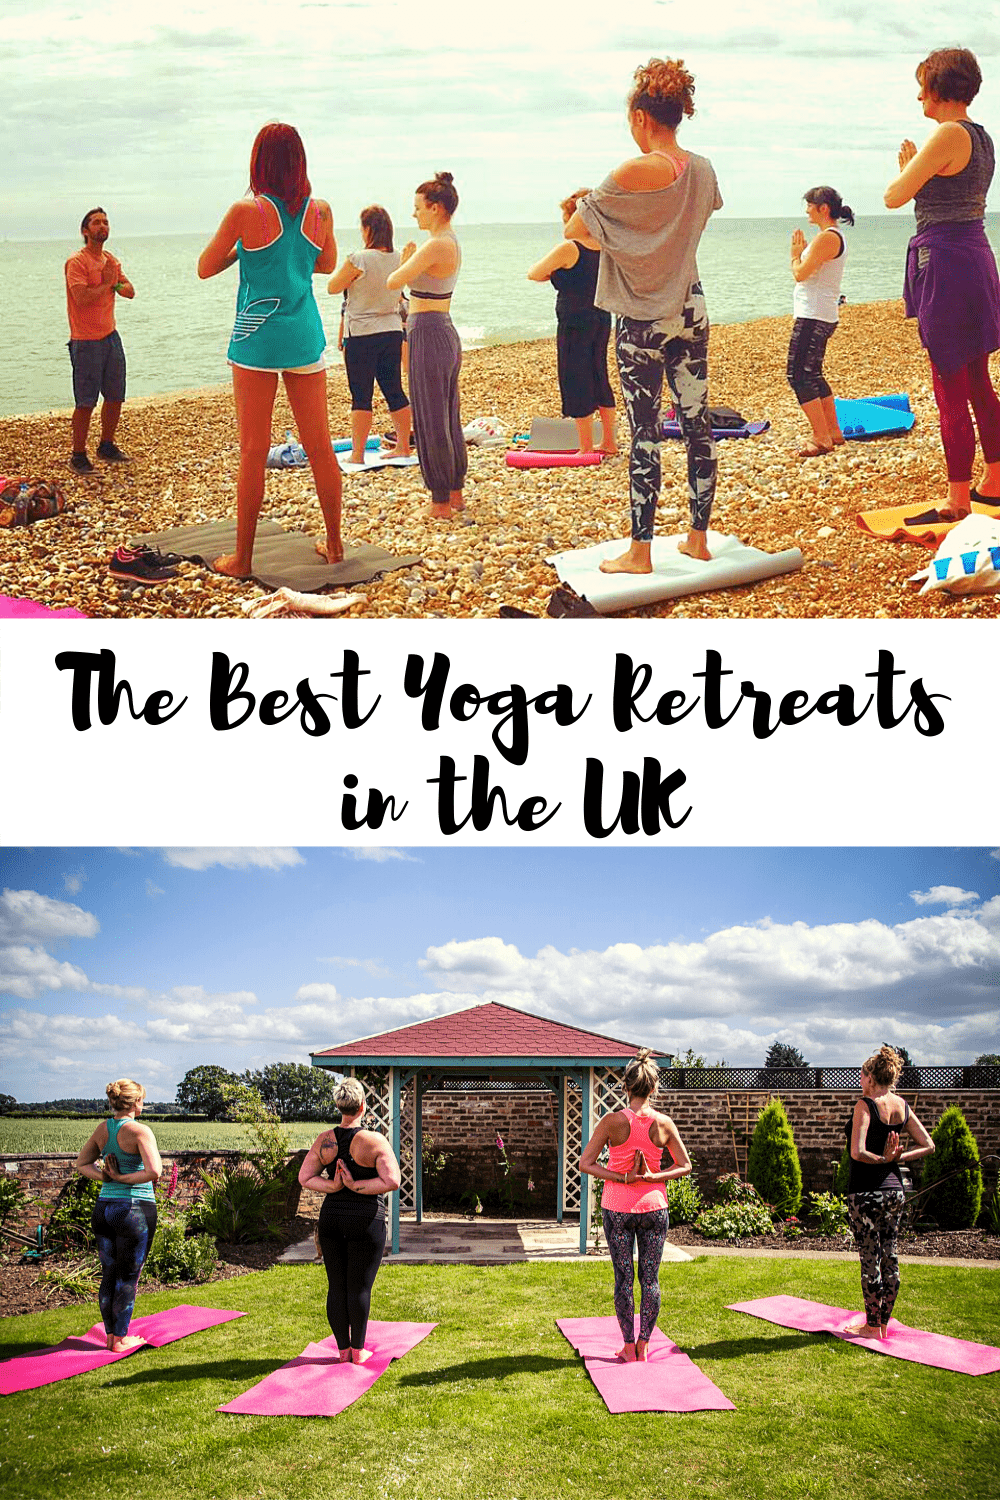 Top UK yoga retreats